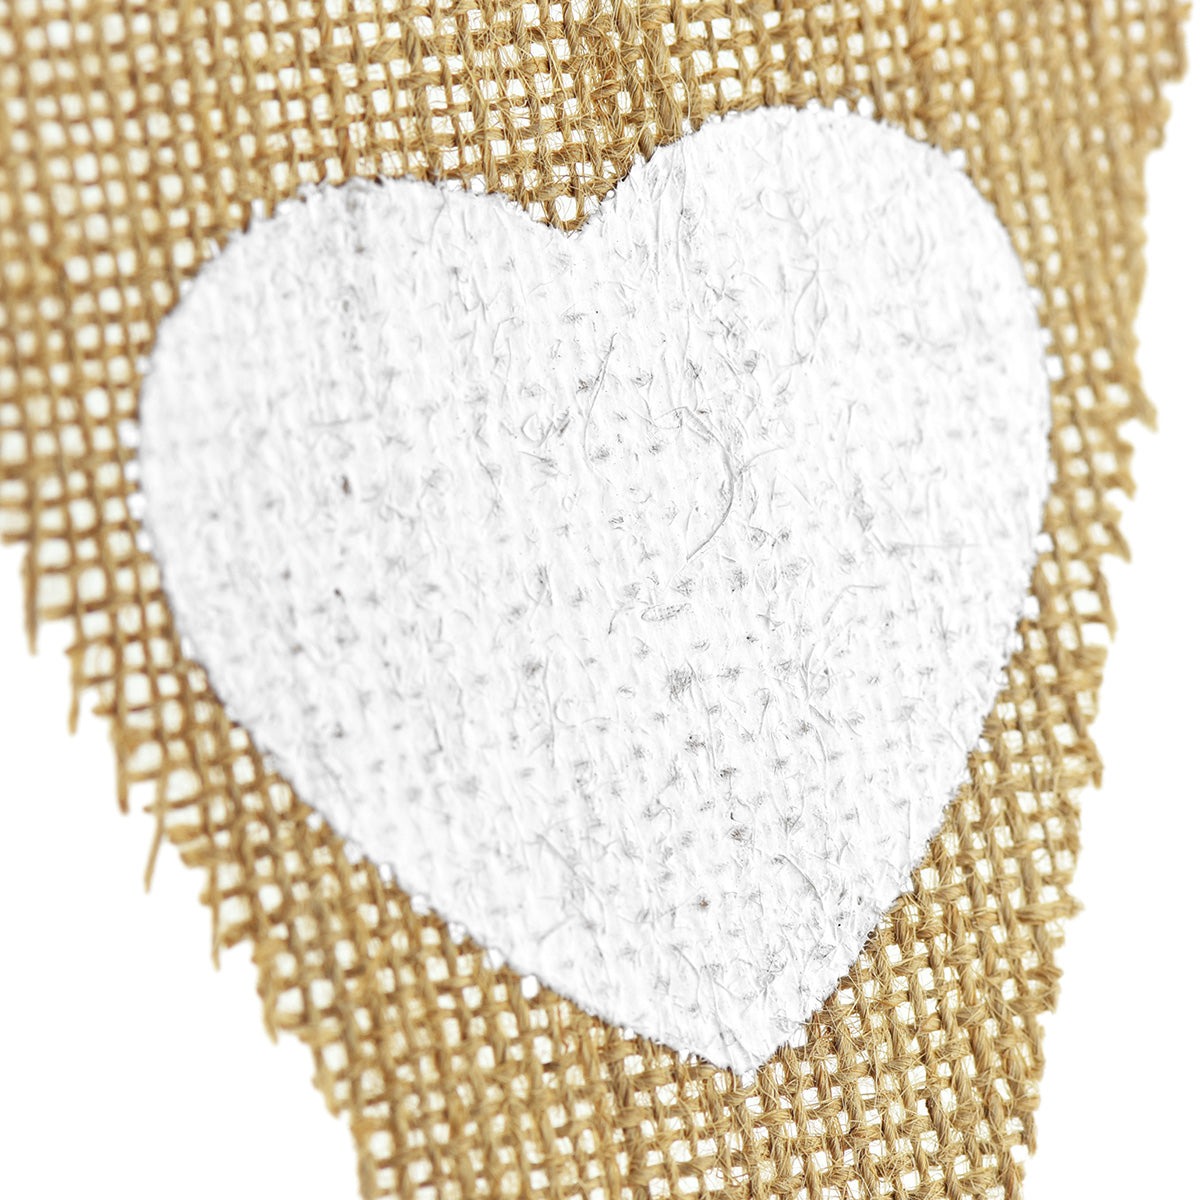 Burlap Pennant Banner with Heart Patterns - FiveSeasonStuff